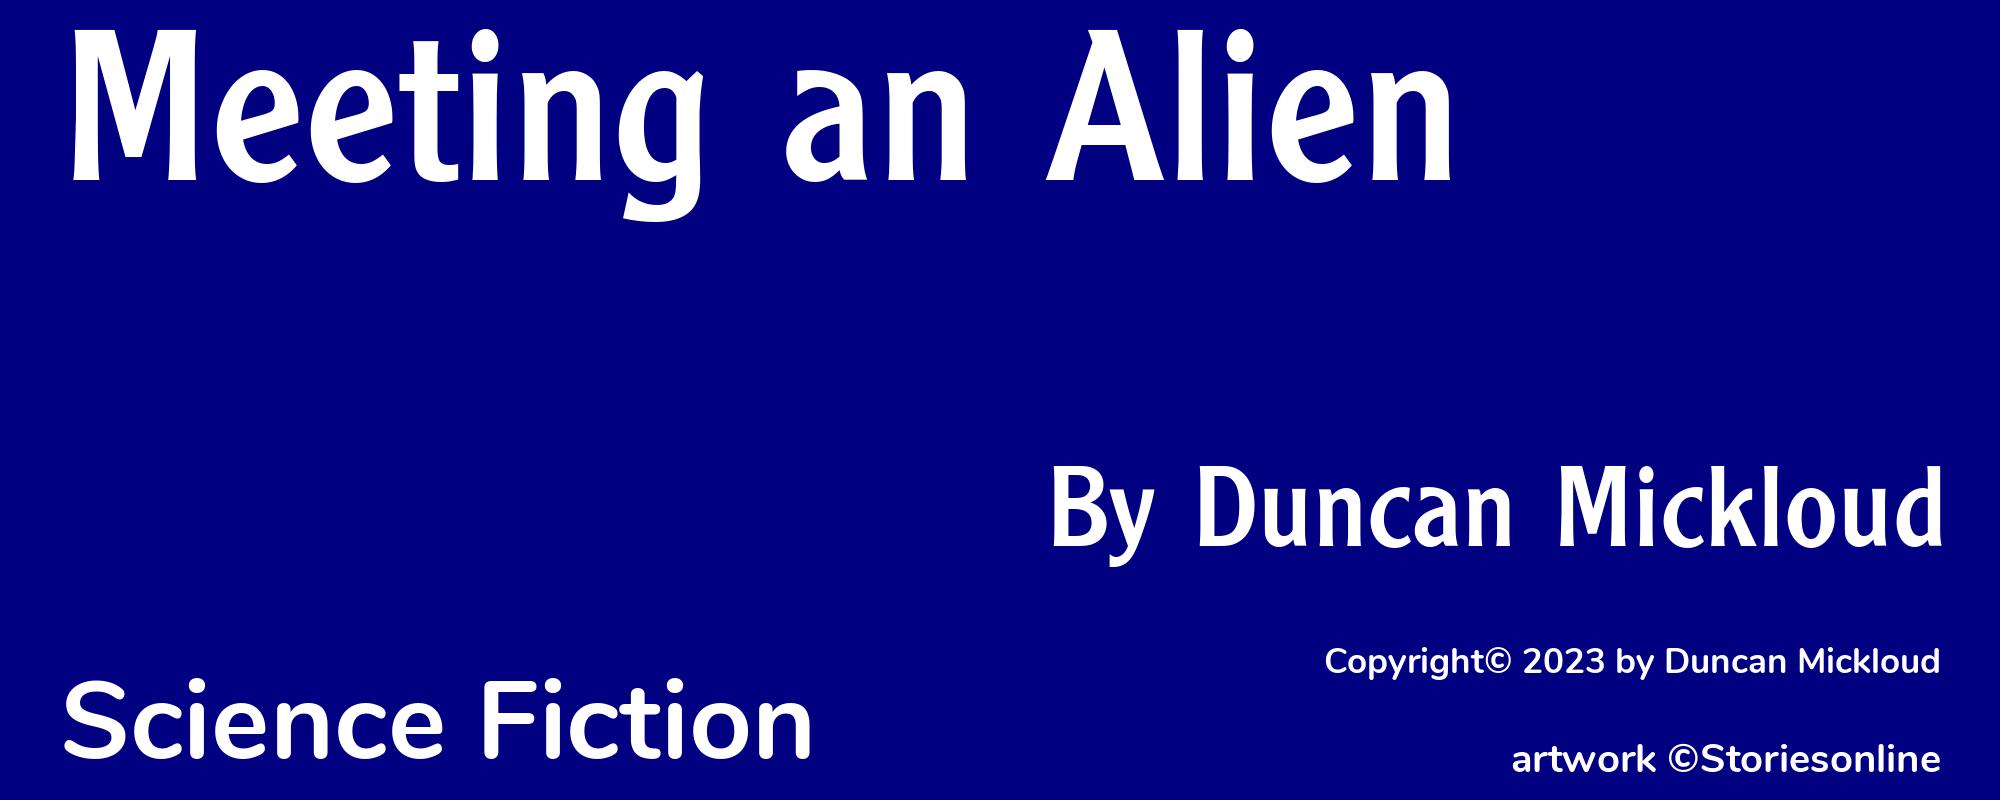 Meeting an Alien - Cover